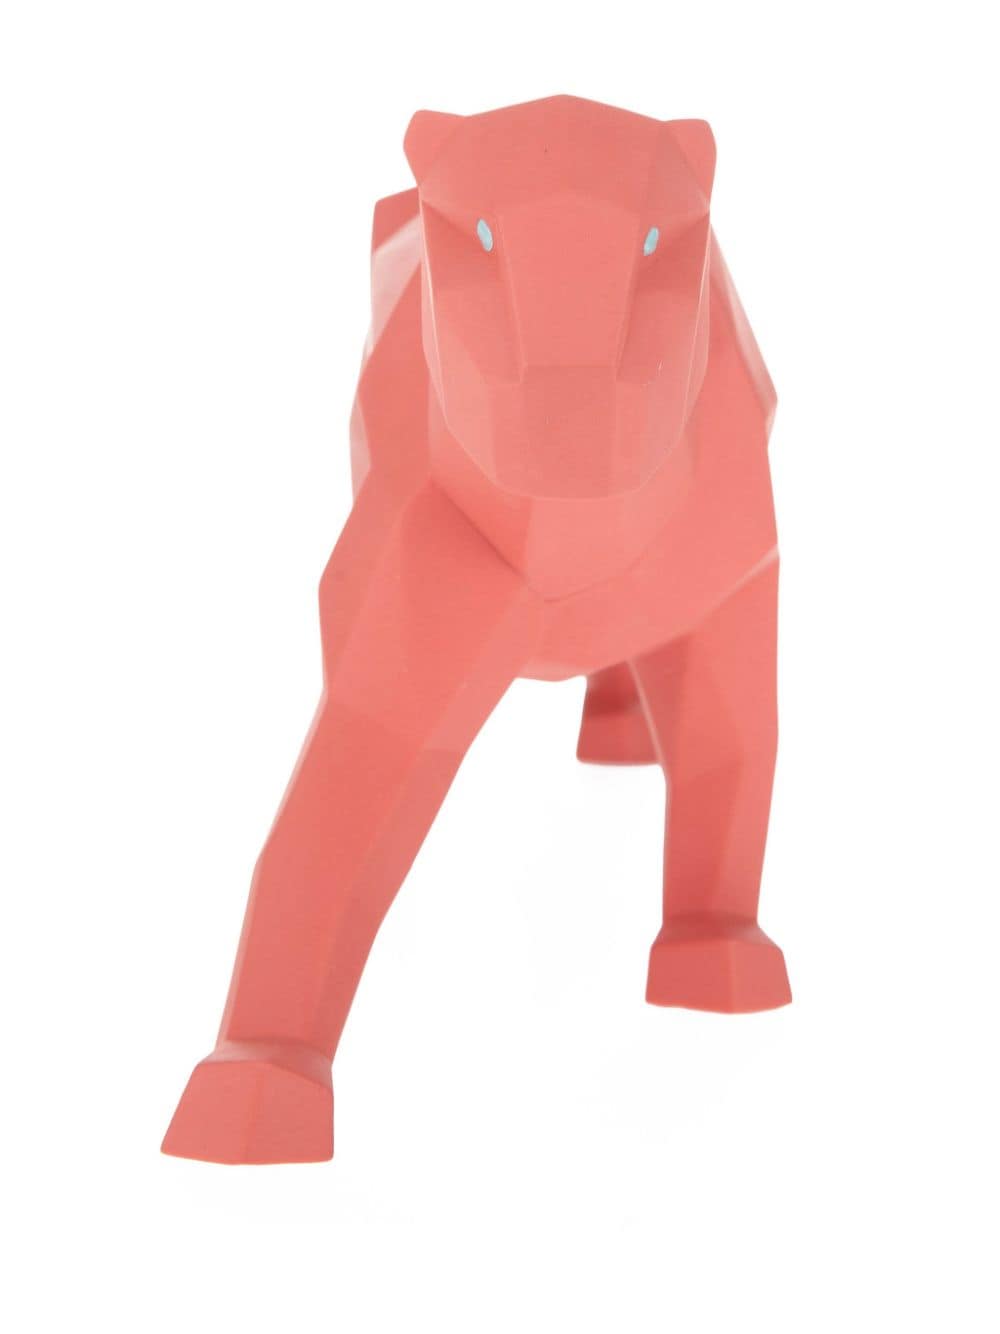 Shop Lladrò Panther Faceted Porcelain Figurine In Pink